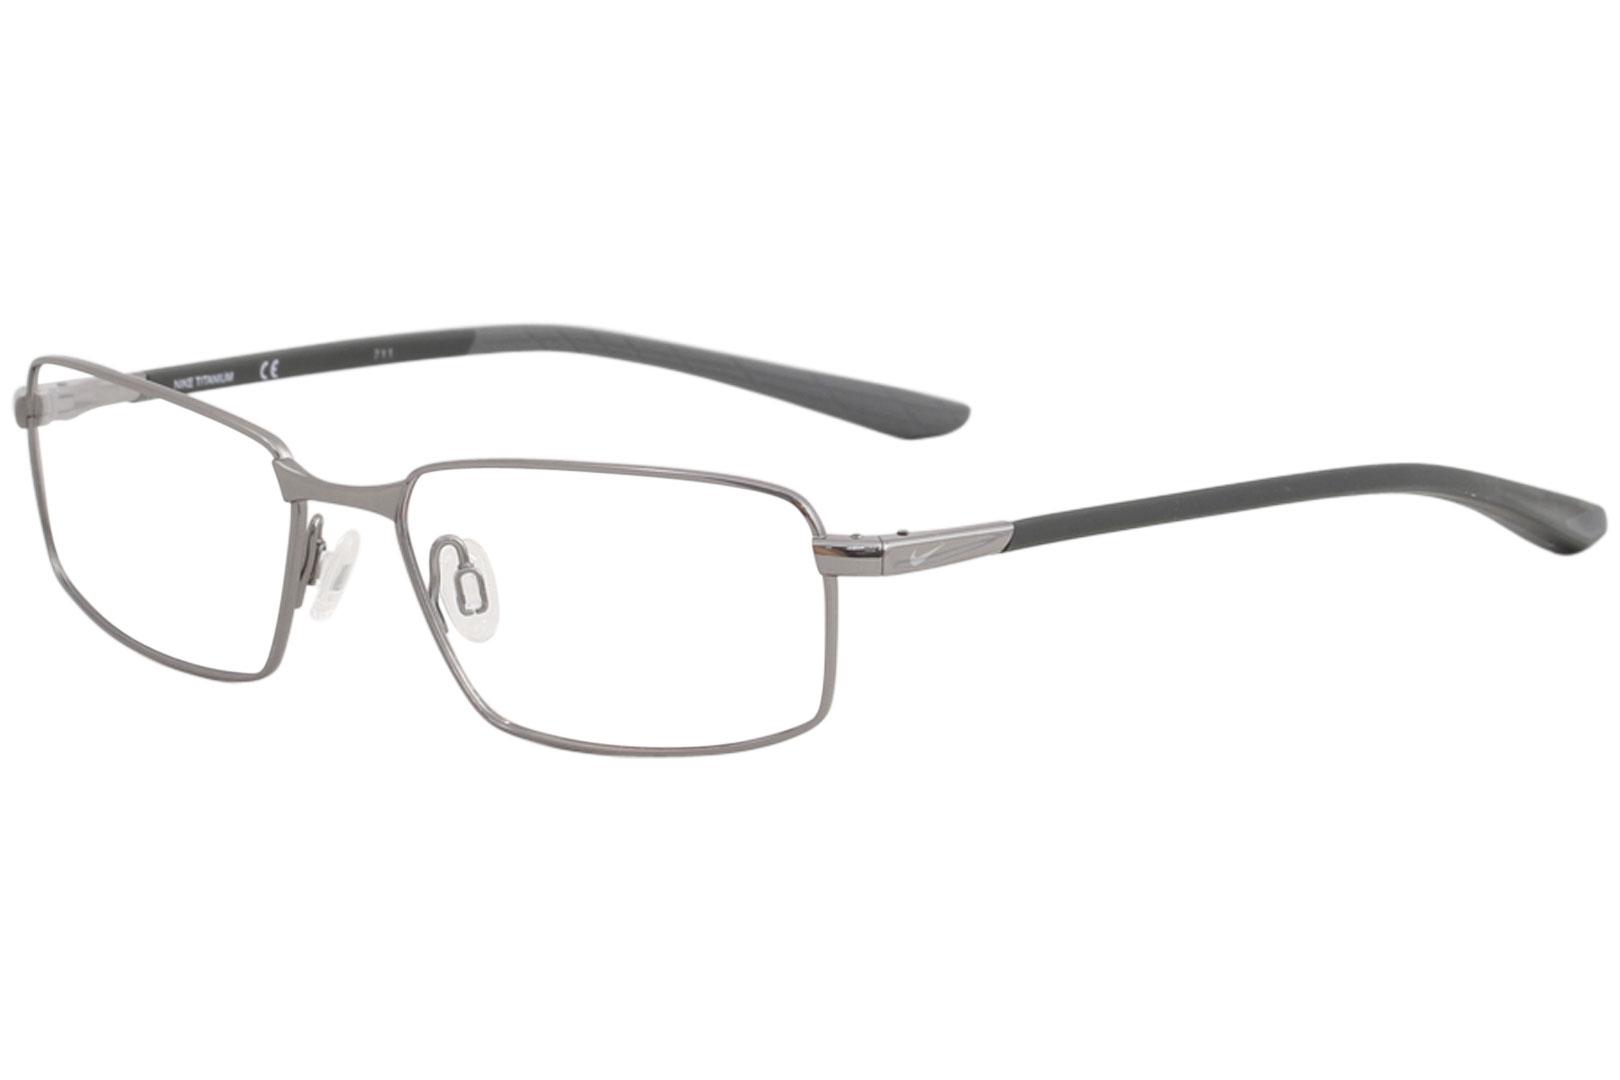 Nike Men's Eyeglasses 6072 Rim Optical |